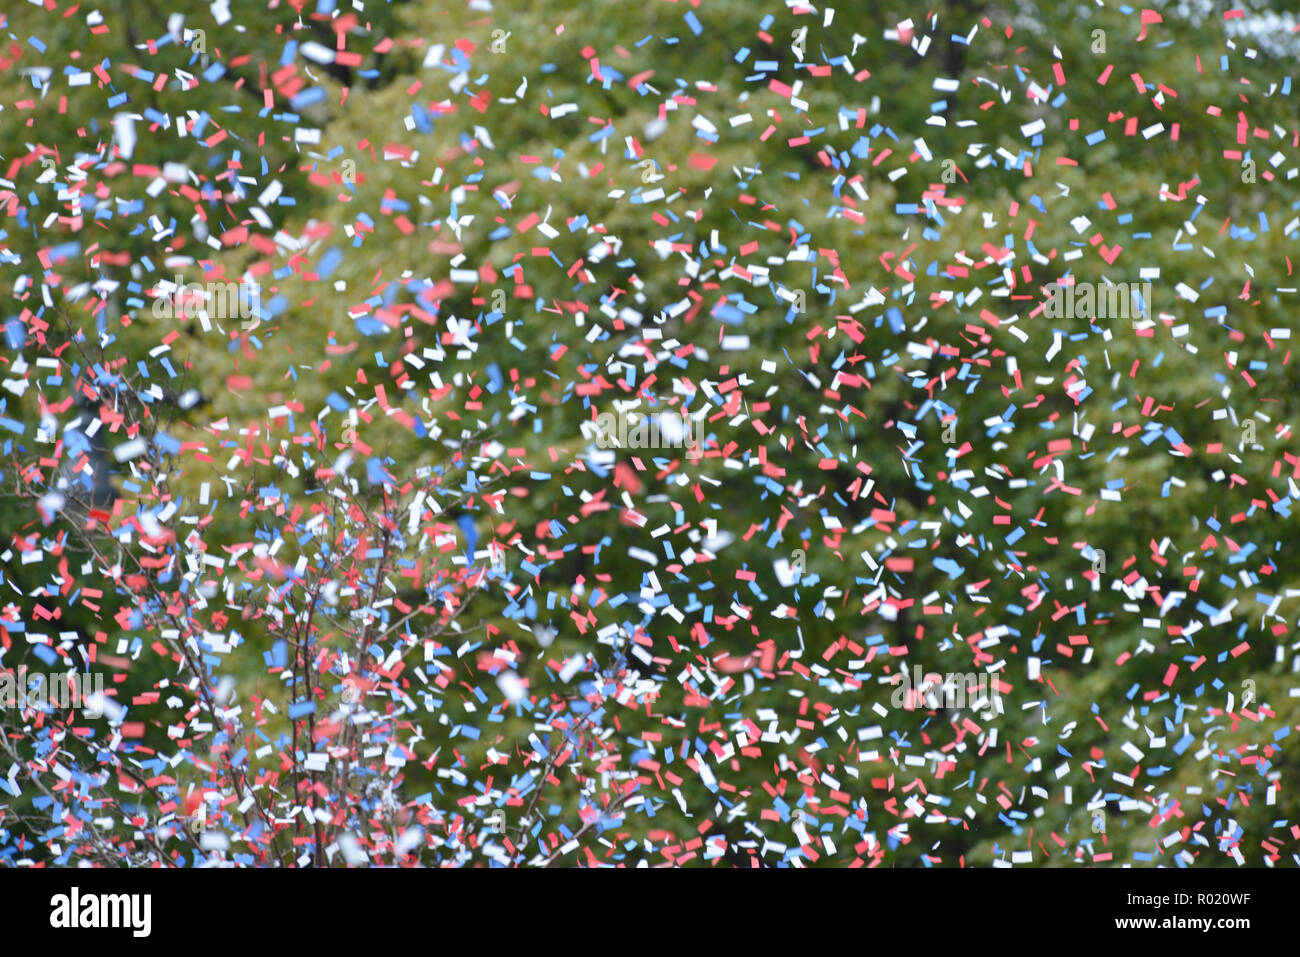 Boston, Massachusetts, EE.UU. 31 Oct, 2018. Los Red Sox de Boston World Series Victoria Parade tuvo lugar en Boston hoy con miles de fans y los ciudadanos que asisten a un mitin con laminación duckboats a través del Parque Fenway de Boston a Beacon Hill. Los Red Sox derrotó a los Dodgers de Los Angeles por el título de campeón de la Serie Mundial. Crédito: Kenneth Martin/Zuma alambre/Alamy Live News Foto de stock